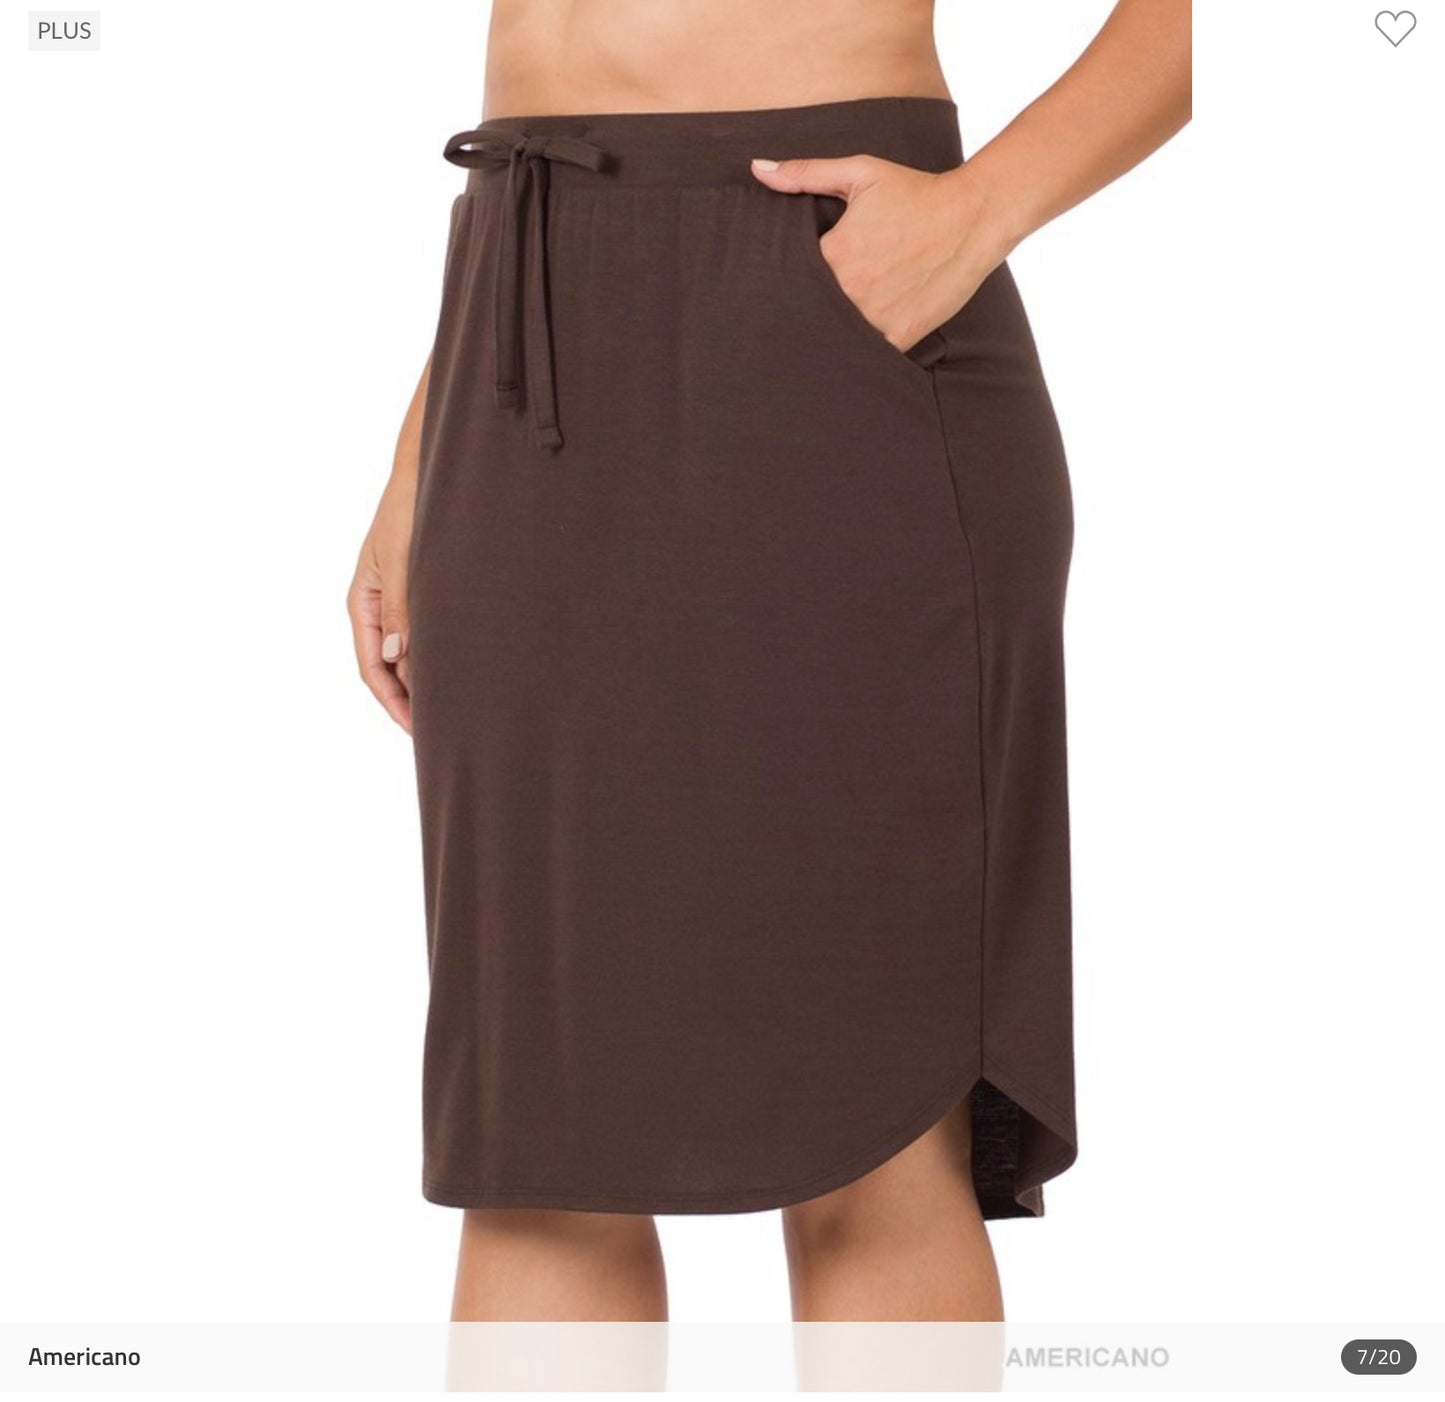 Maddie Weekender Skirt in Americano- Misses and Plus (M,XL,1X)